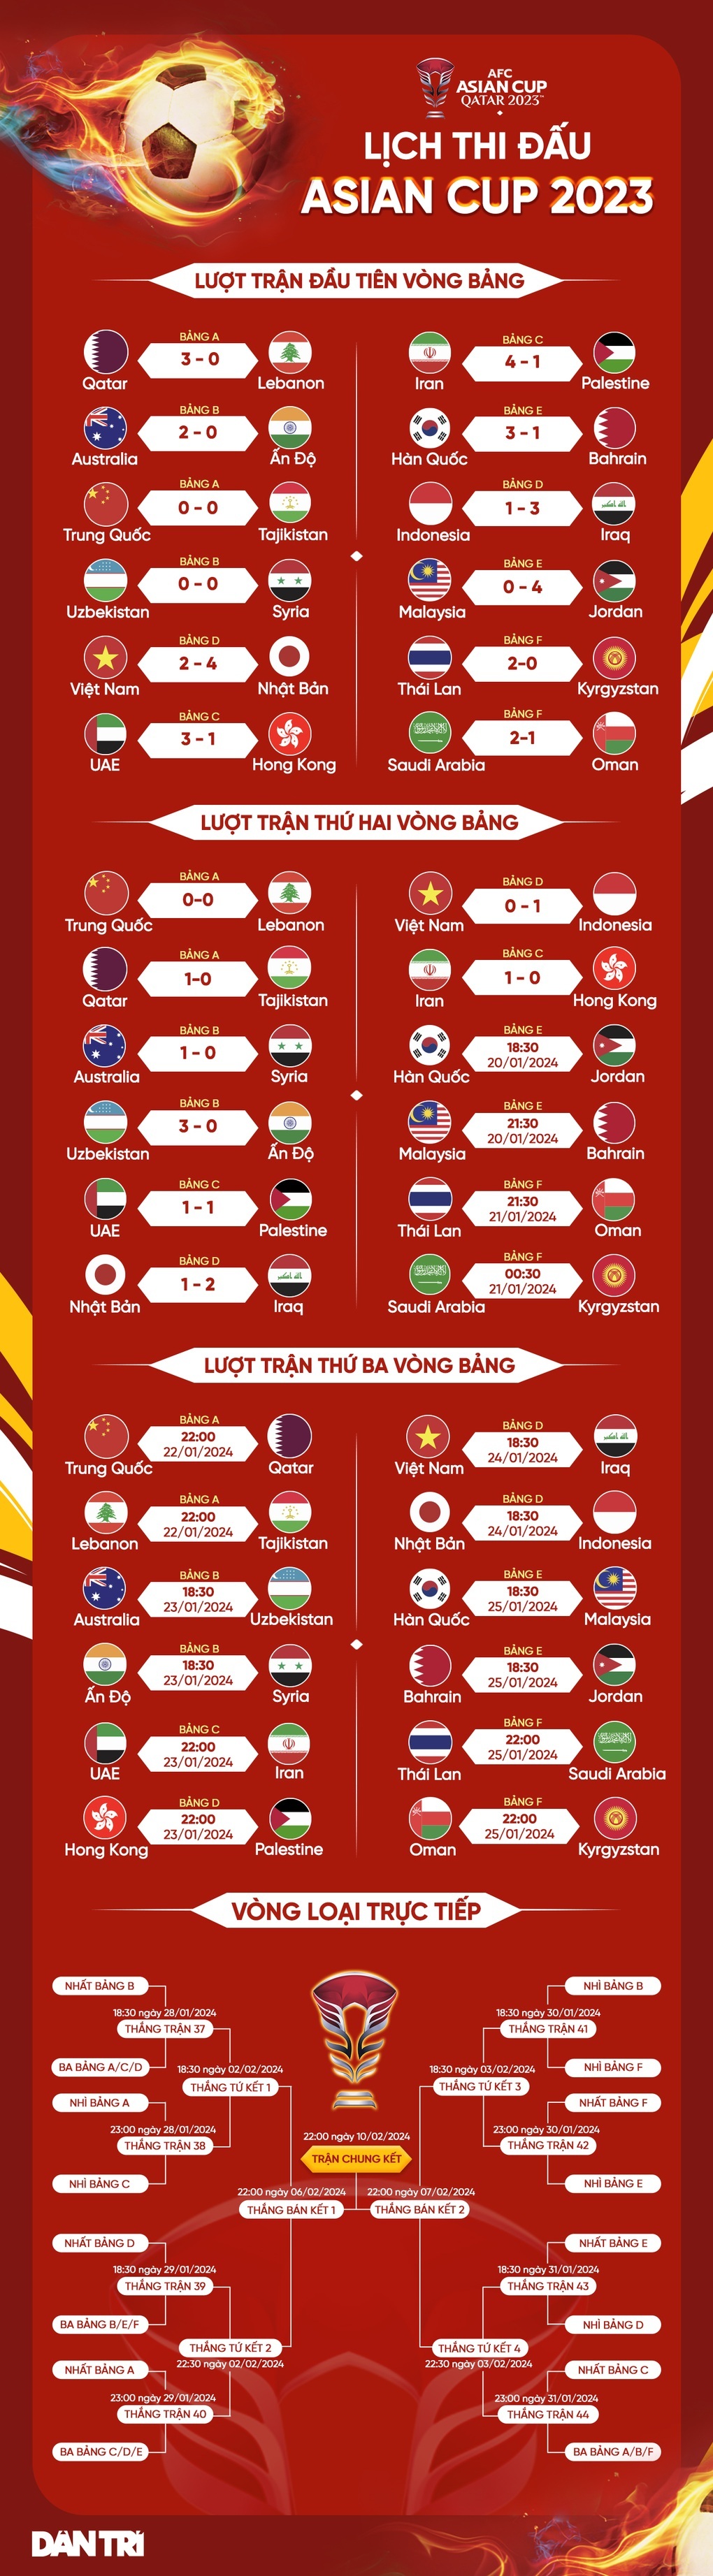 CĐV Đông Nam Á phản ứng bất ngờ khi ĐT Việt Nam thua ĐT Indonesia- Ảnh 3.